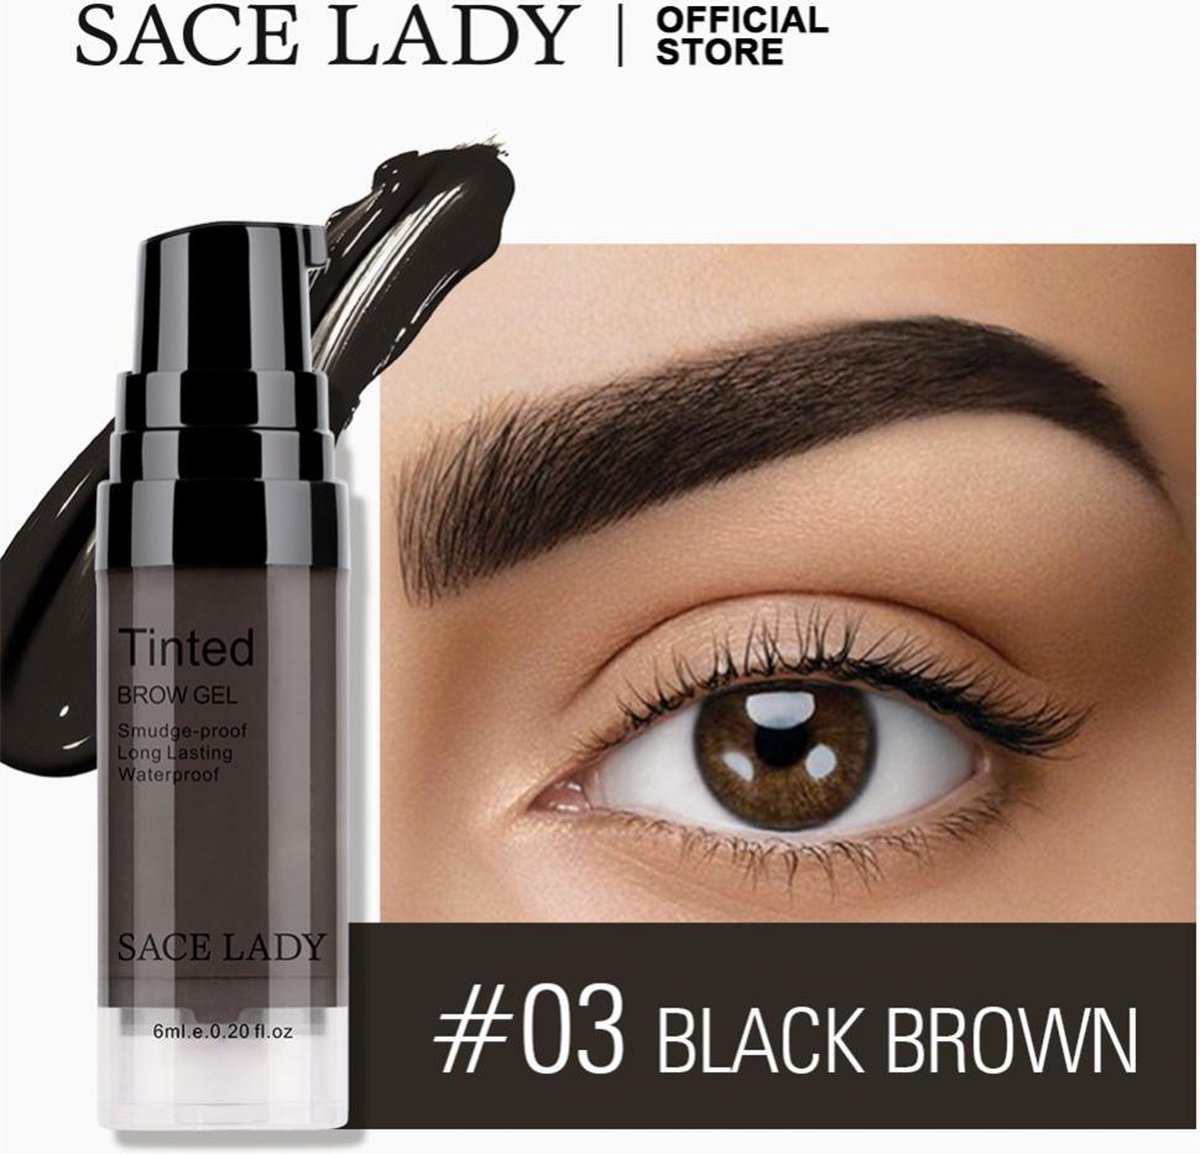 Sace Lady Tattoo Brow Gel - Brow Gel - Wenkbrauw Gel Mascara – Black Brown #03 – Assortiment ‘Het Gemak’